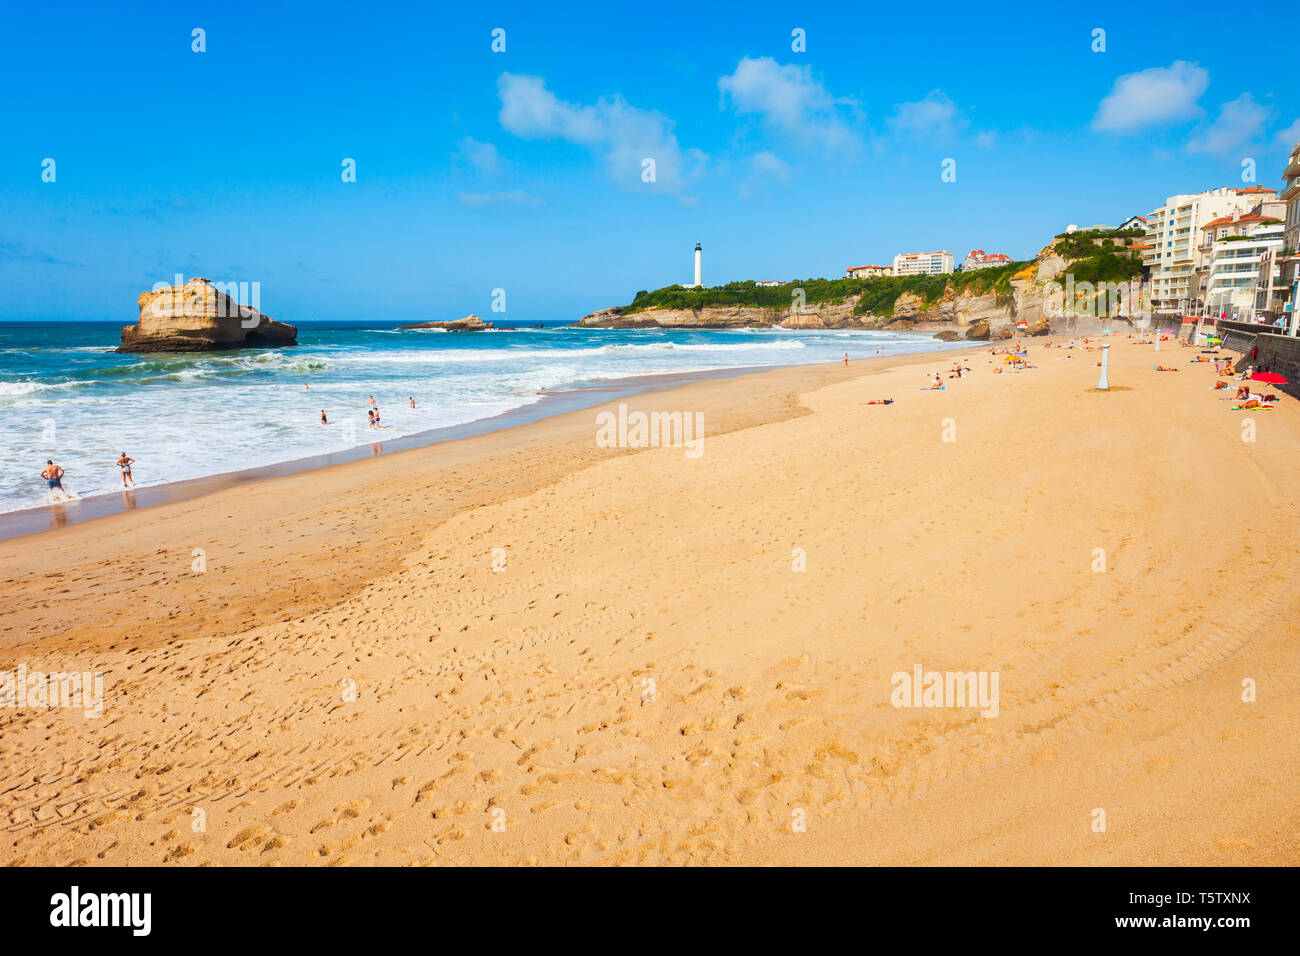 La Grande Plage ist ein öffentlicher Strand in Biarritz Stadt am Golf von  Biskaya an der Atlantikküste in Frankreich Stockfotografie - Alamy